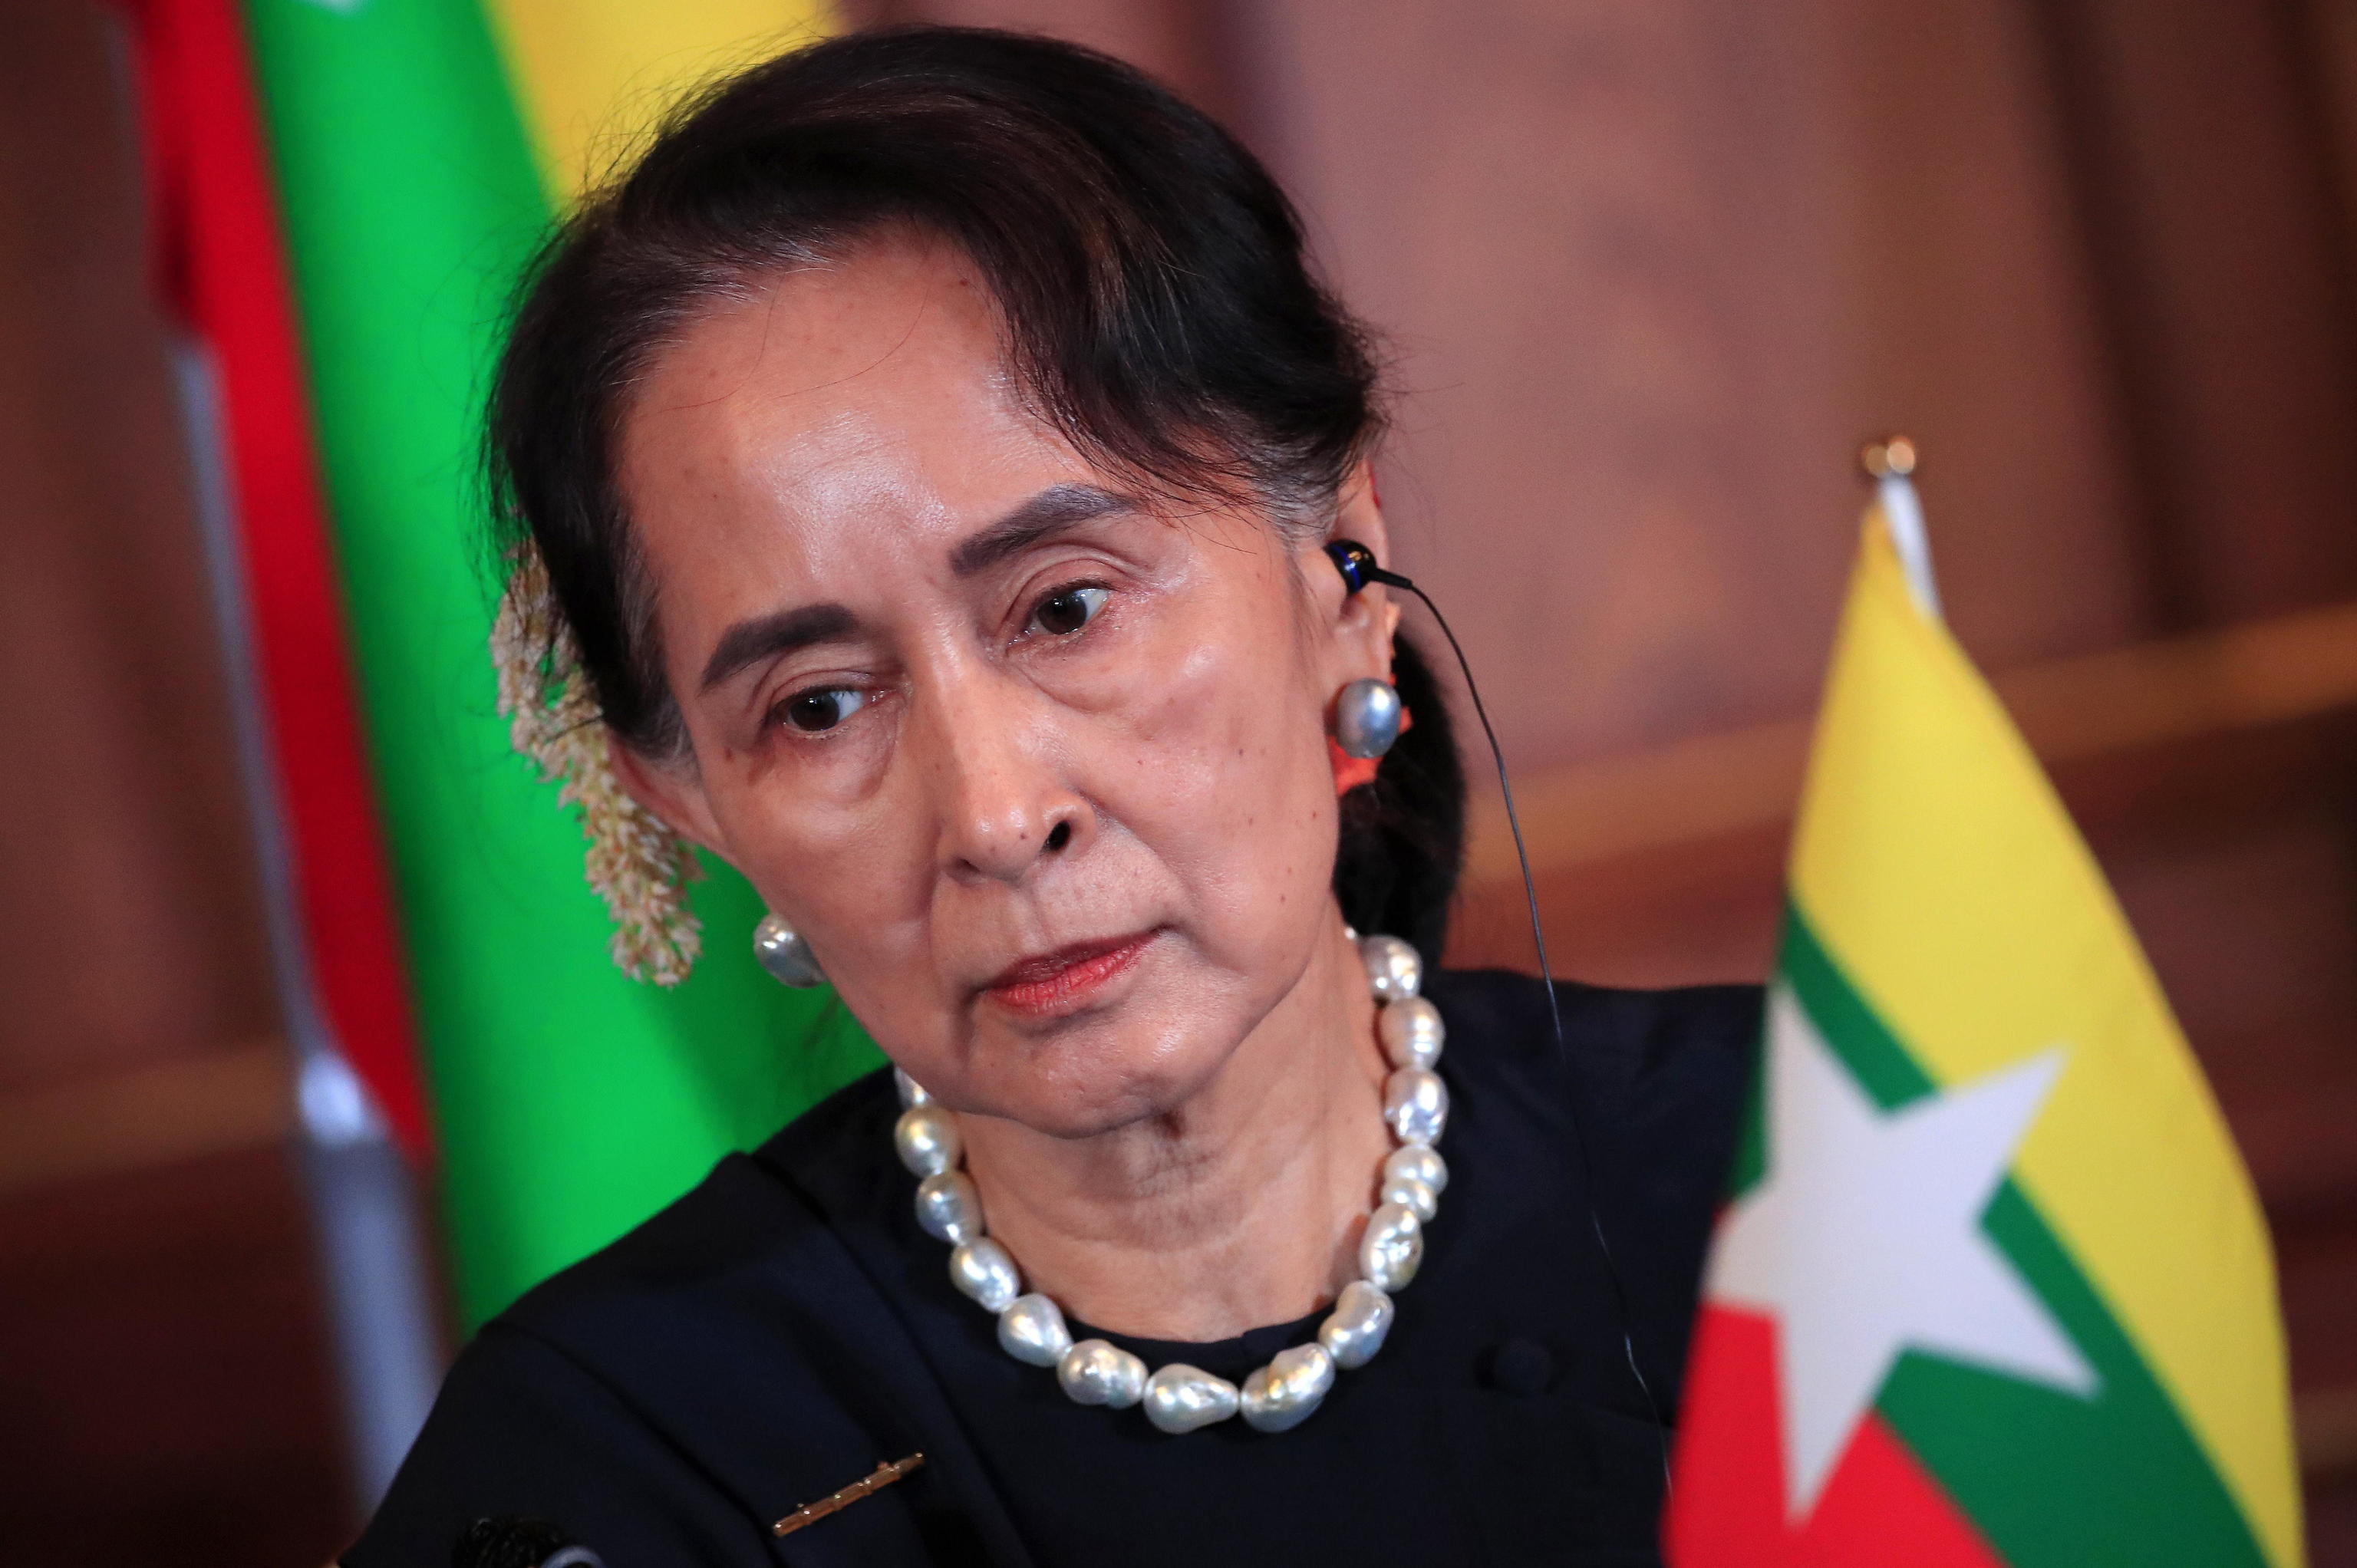 La ex líder Suu Kyi es trasladada de prisión a arresto domiciliario mientras la crisis humanitaria se agrava en Birmania